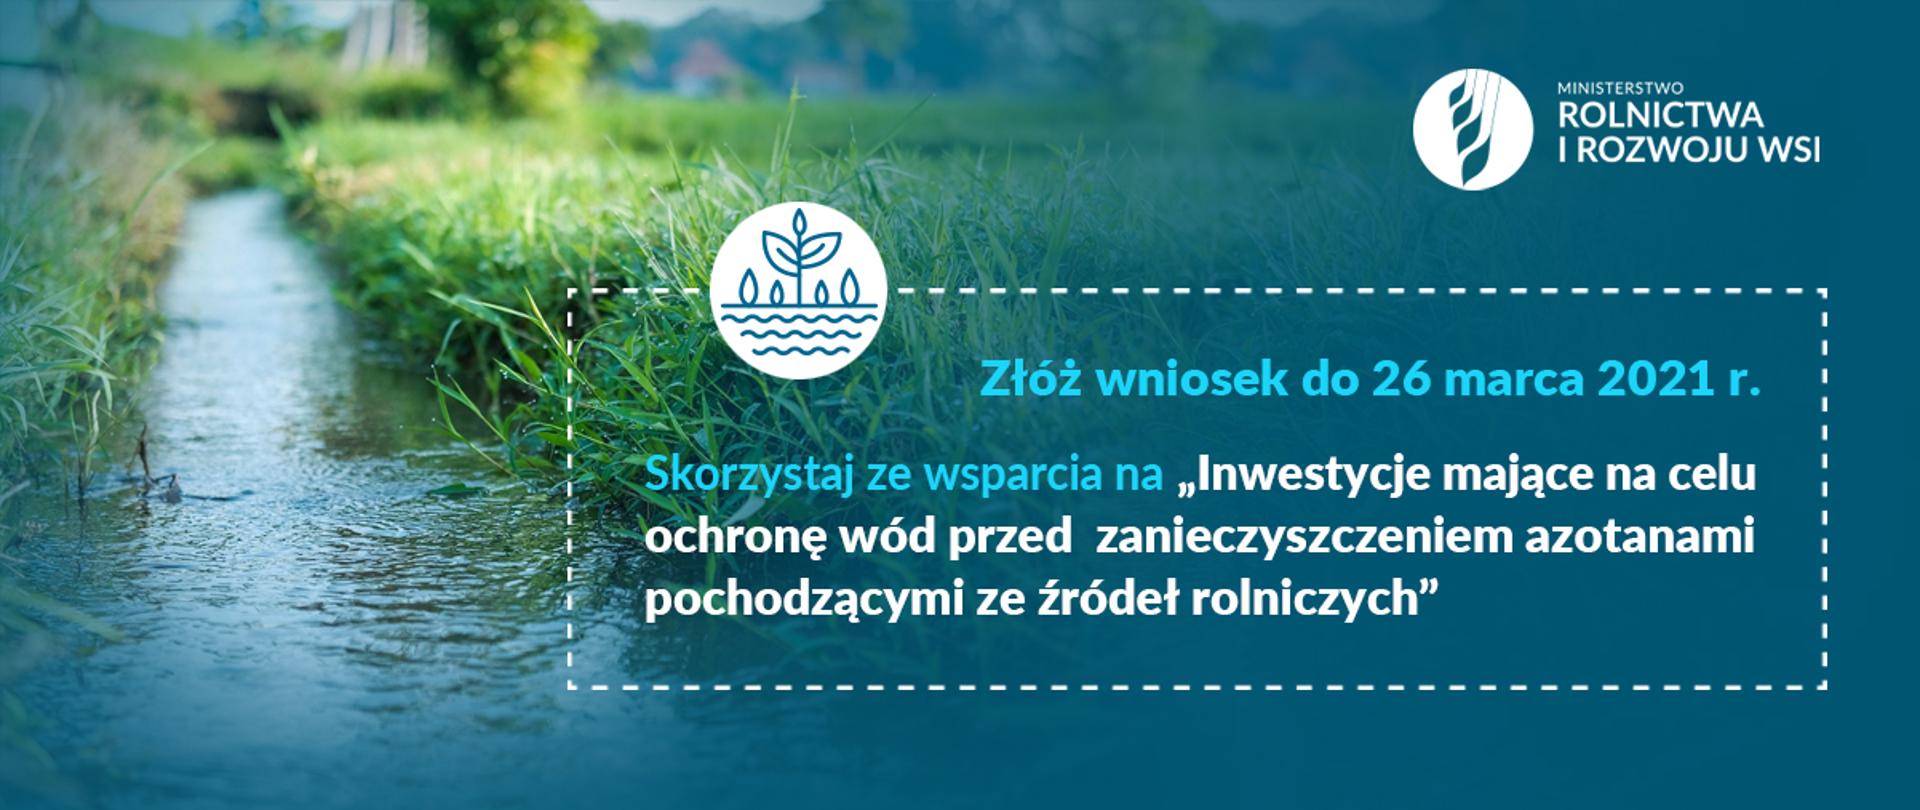 Grafika do komunikatu "Doposaż gospodarstwo – skorzystaj ze wsparcia na inwestycje w celu ochrony wód".
Strumień.